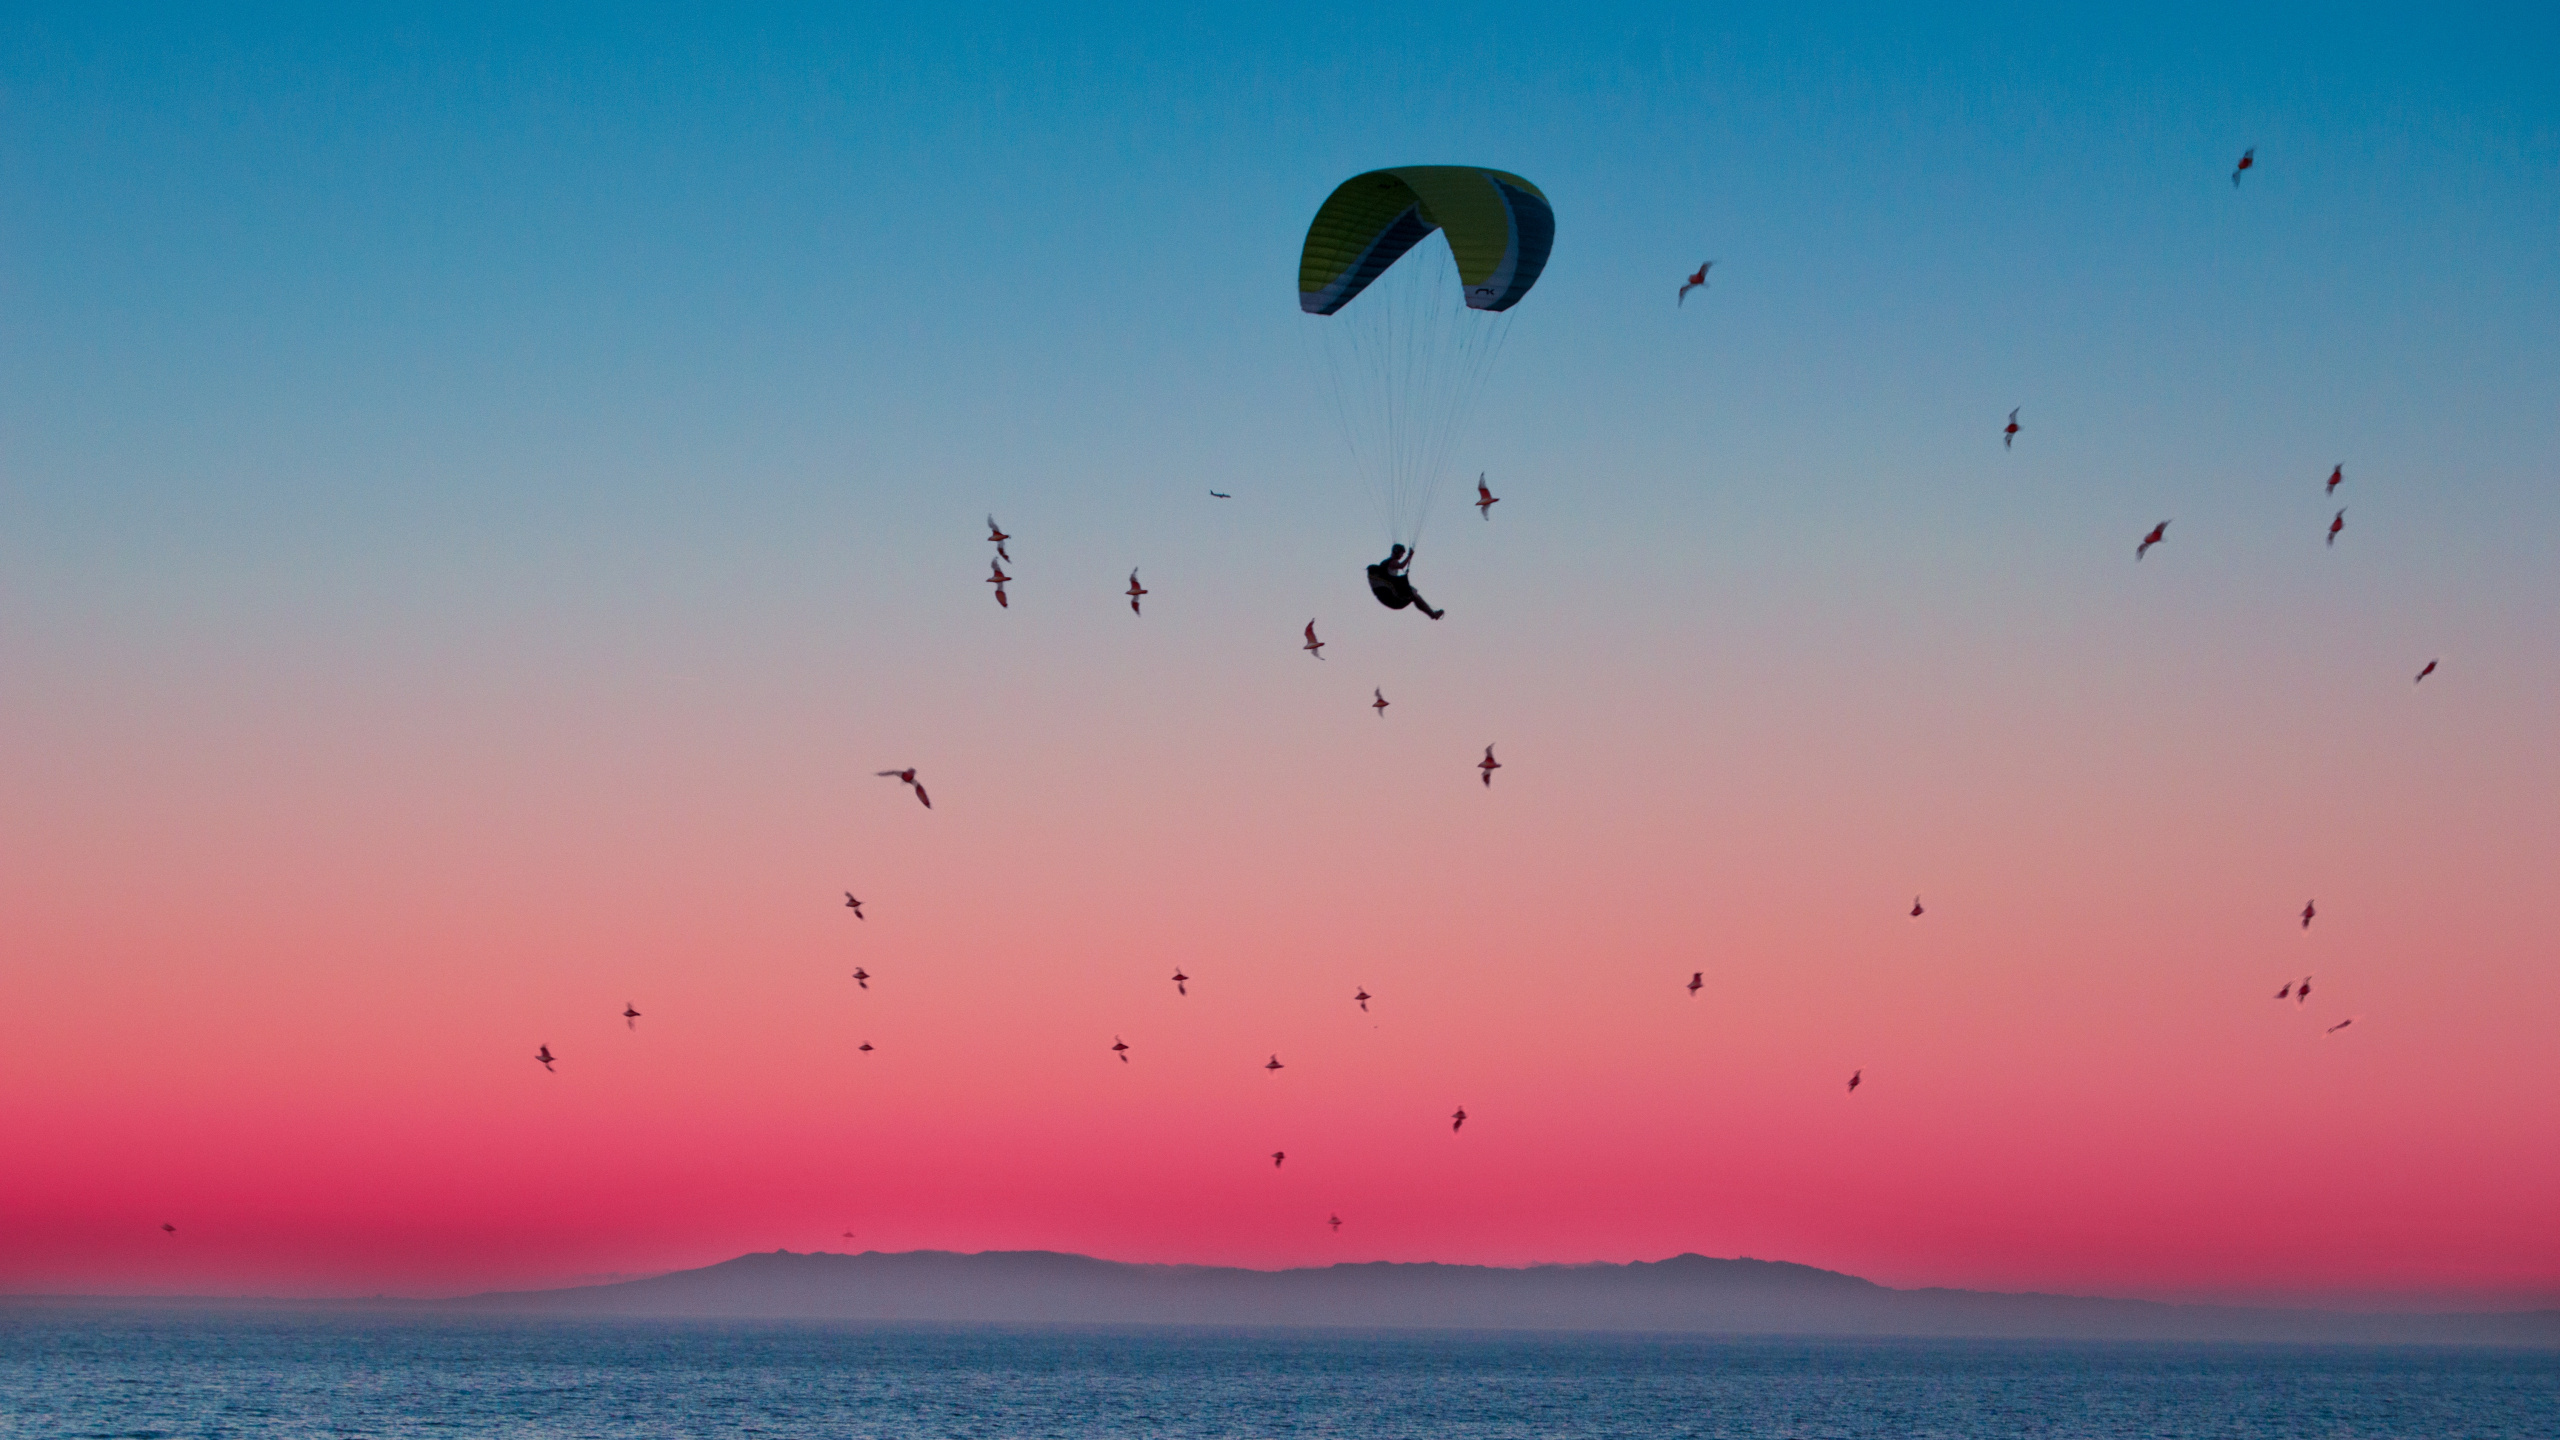 地平线, 空中运动, 降落伞, 大海, 粉红色 壁纸 2560x1440 允许